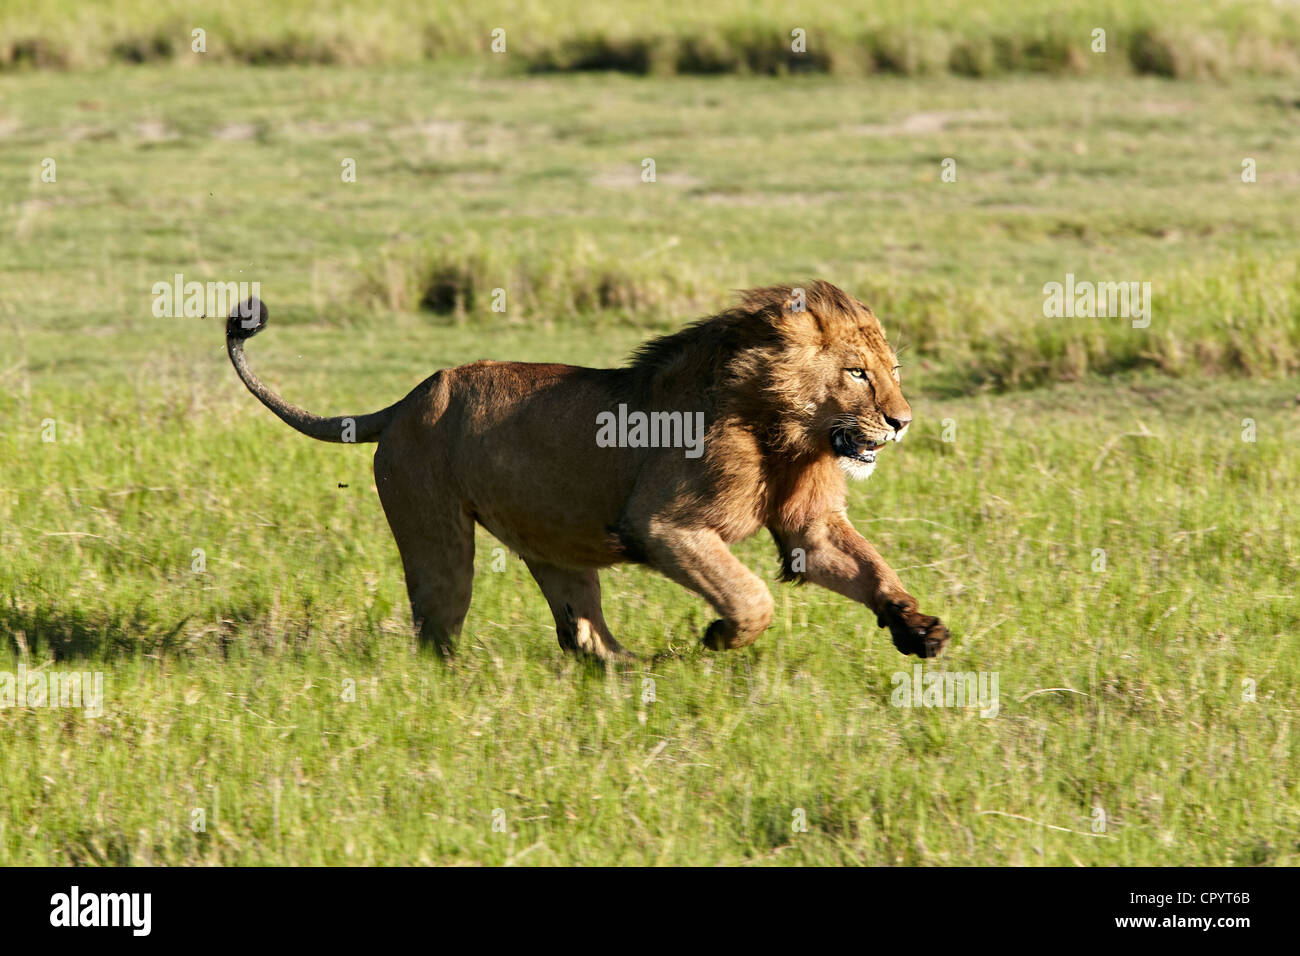 Lion (Panthera leo), running, Ngorongoro Crater, Ngorongoro Conservation Area, Tanzania, Africa Stock Photo